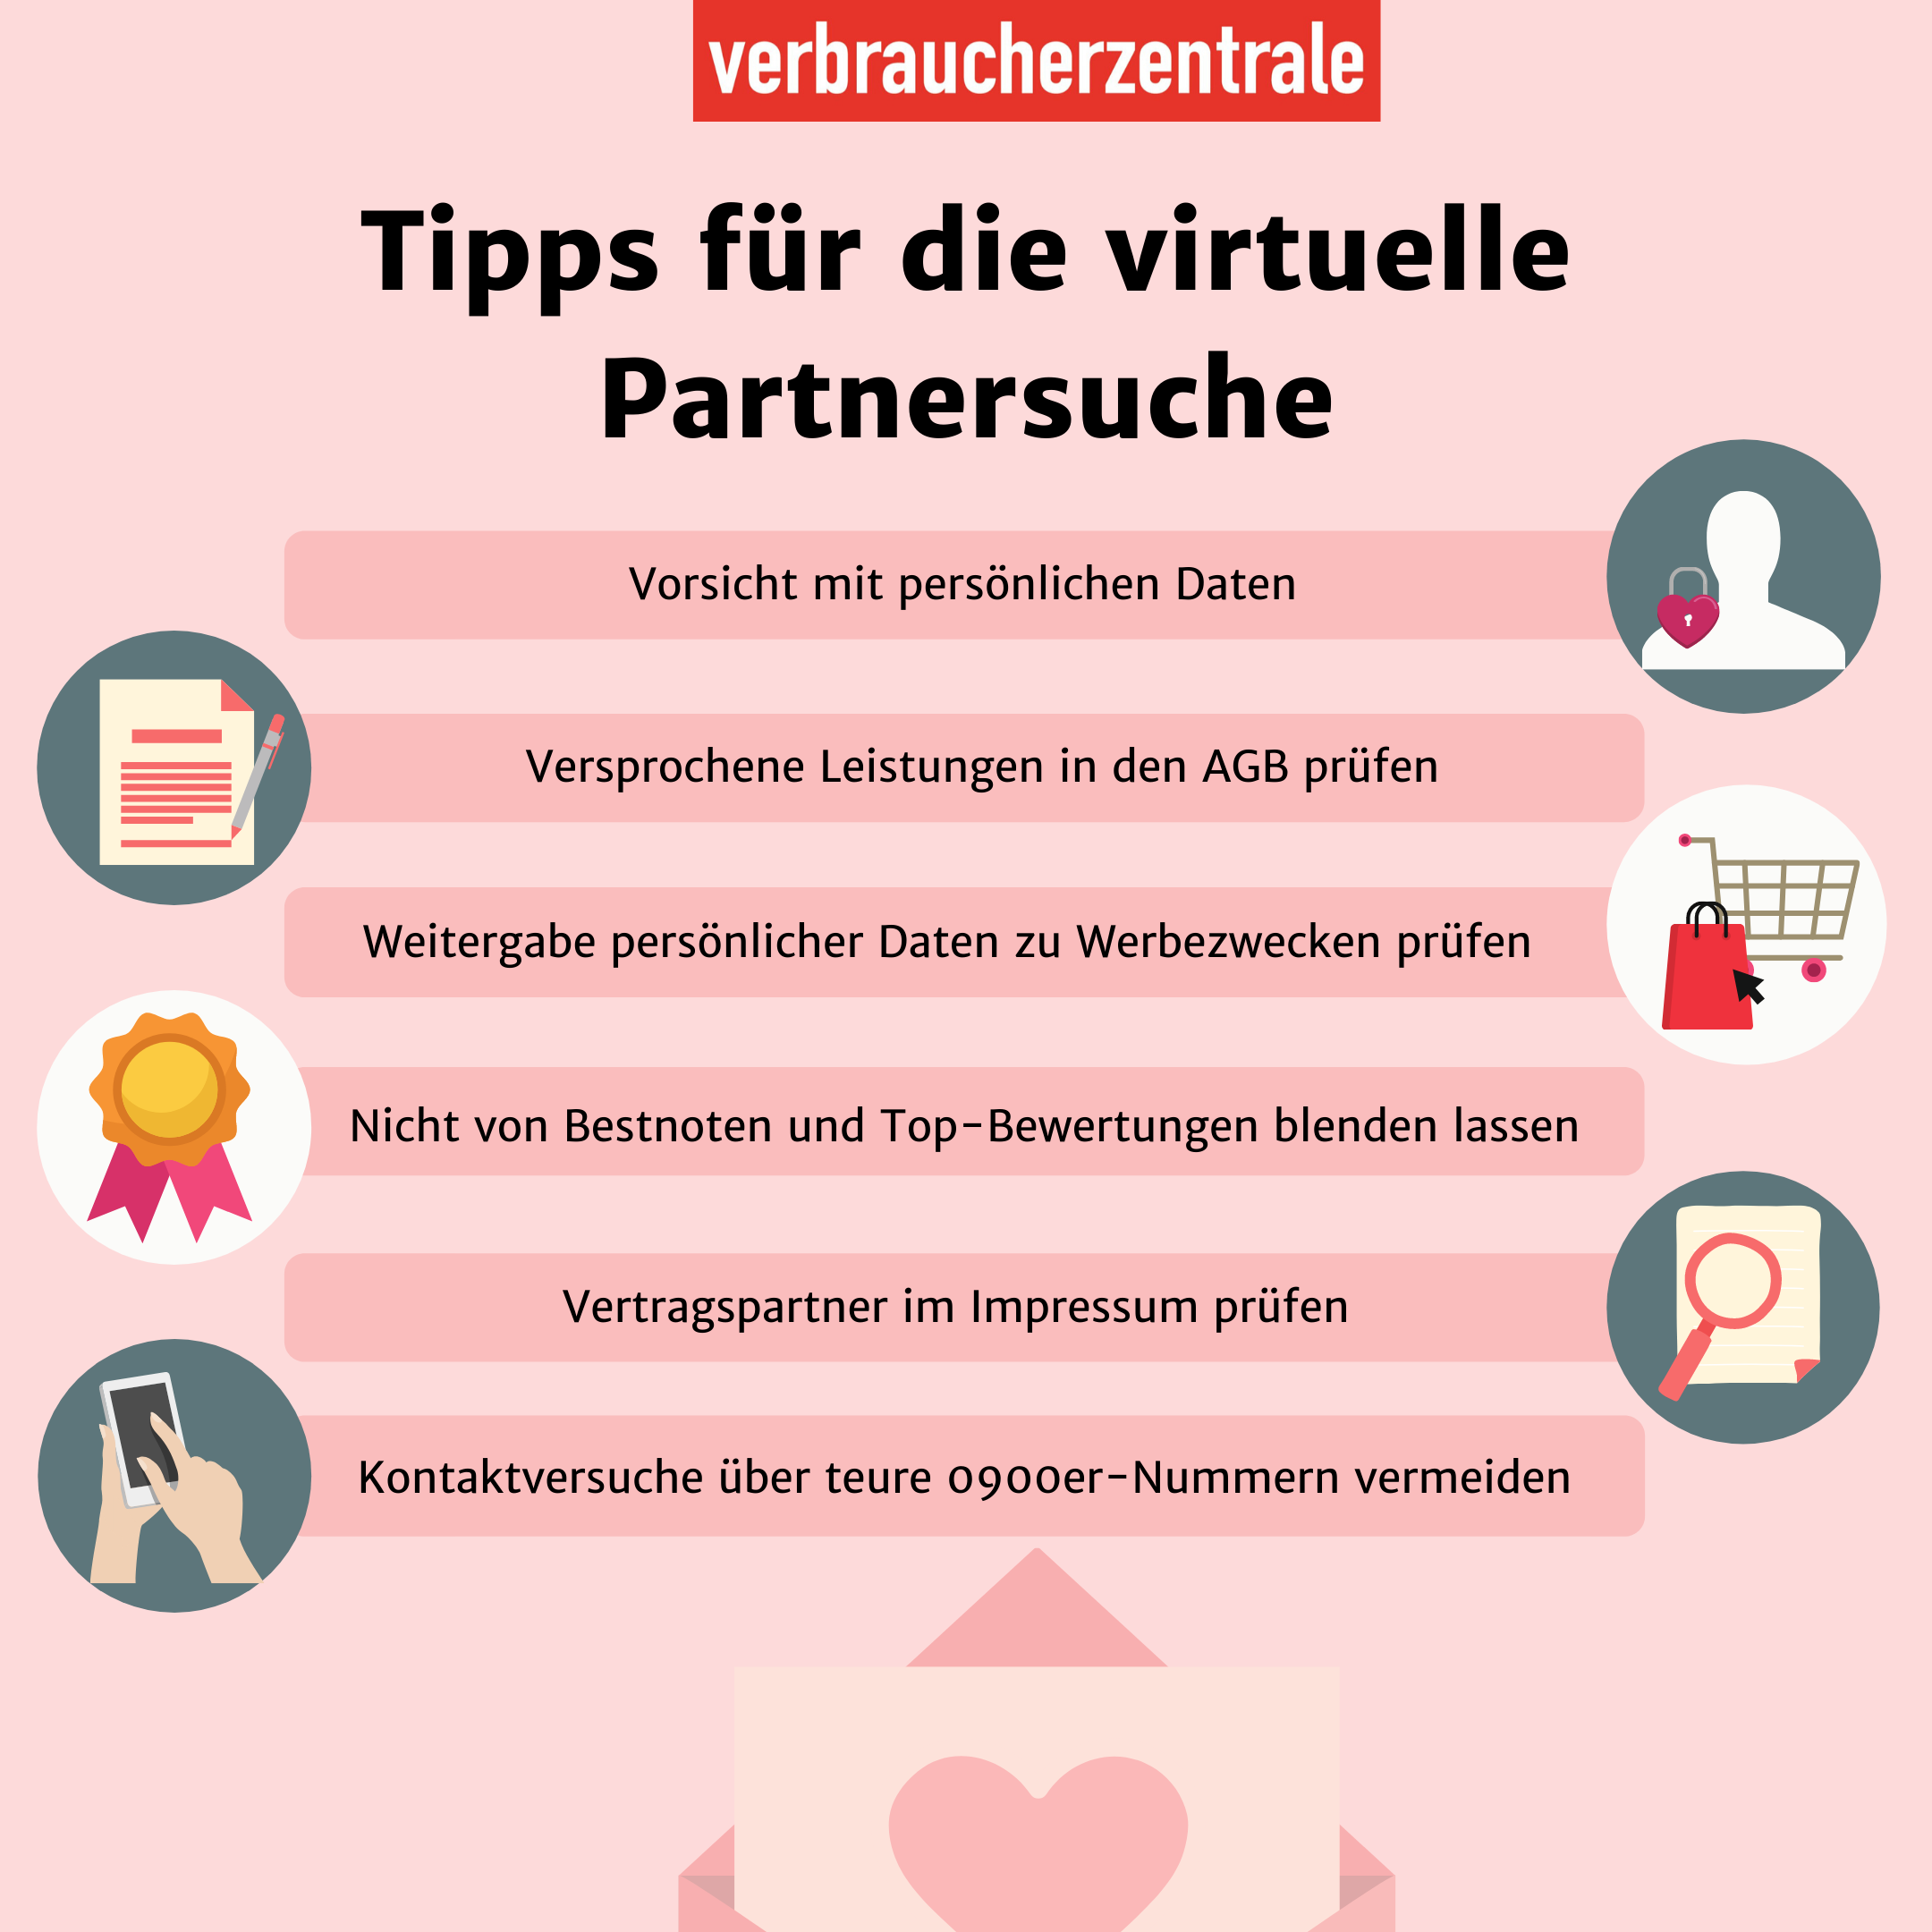 Tipps für die virtuelle Partnersuche